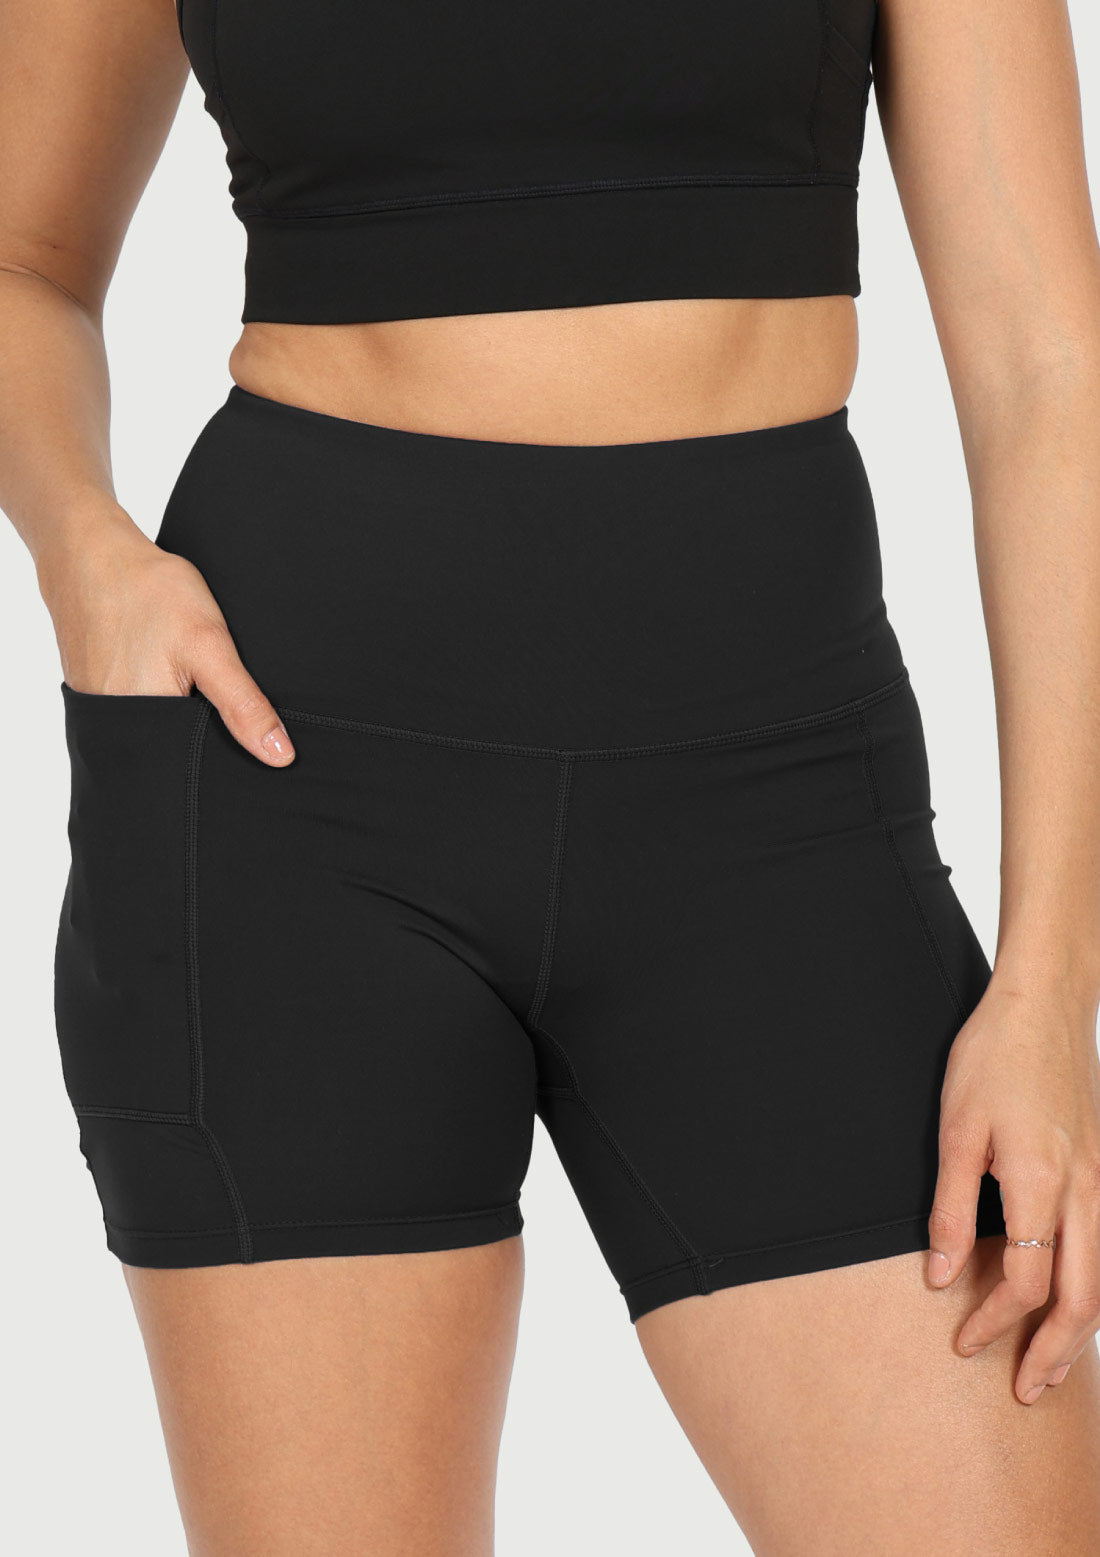 Women Cycling Shorts - Buy Cycling Shorts for Women Online by BlissClub